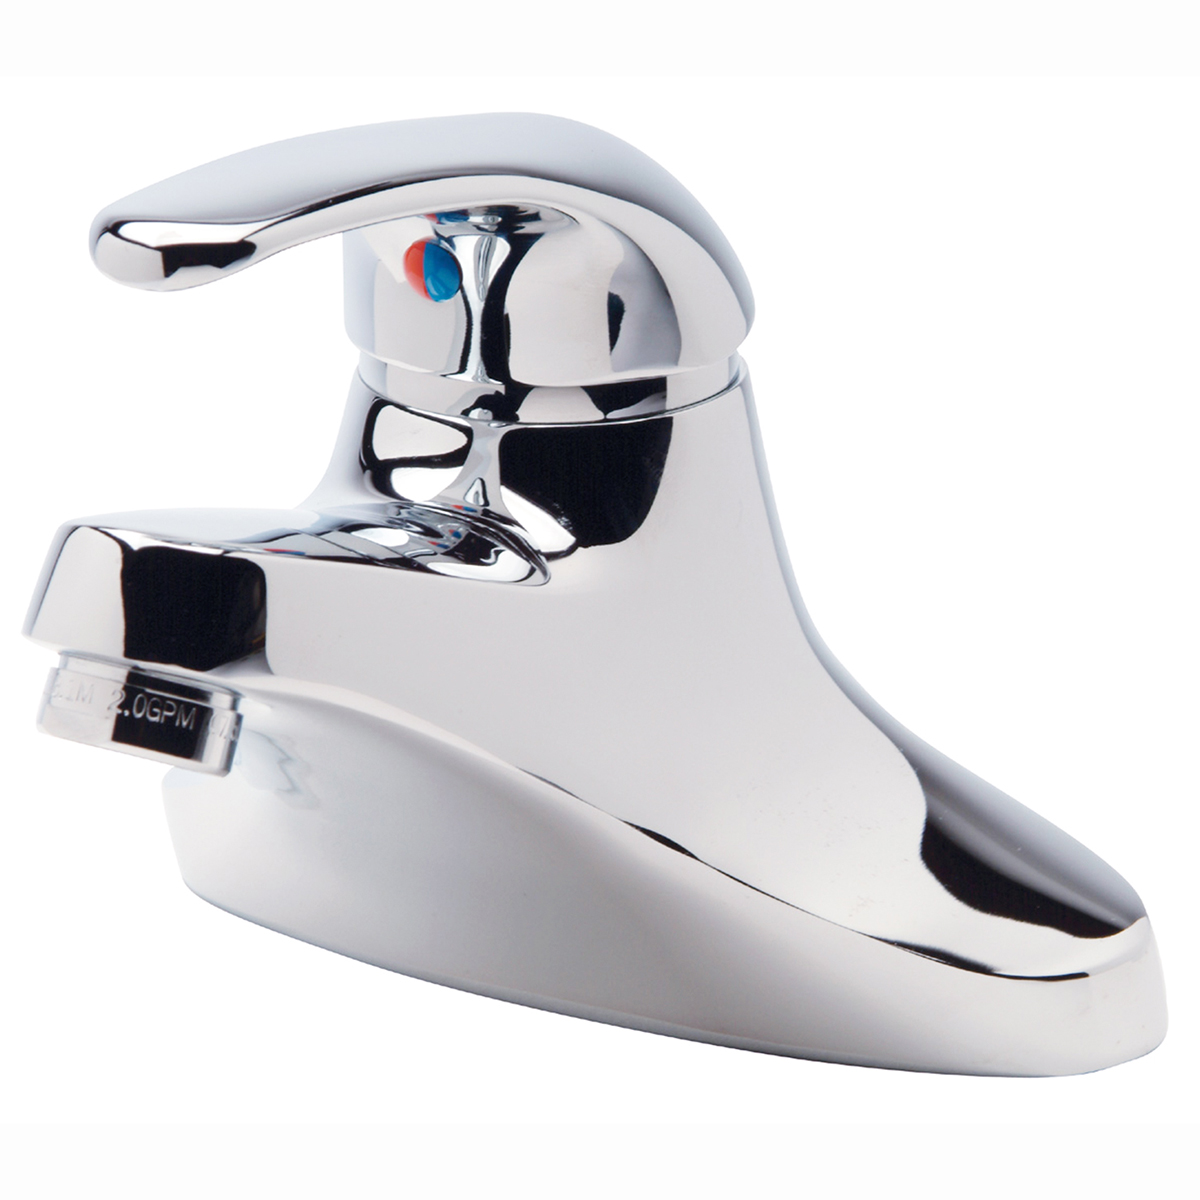 AquaSpec® Z81000-XL Centerset Bathroom Faucet, Polished Chrome, 1 Handles, 2.2 gpm